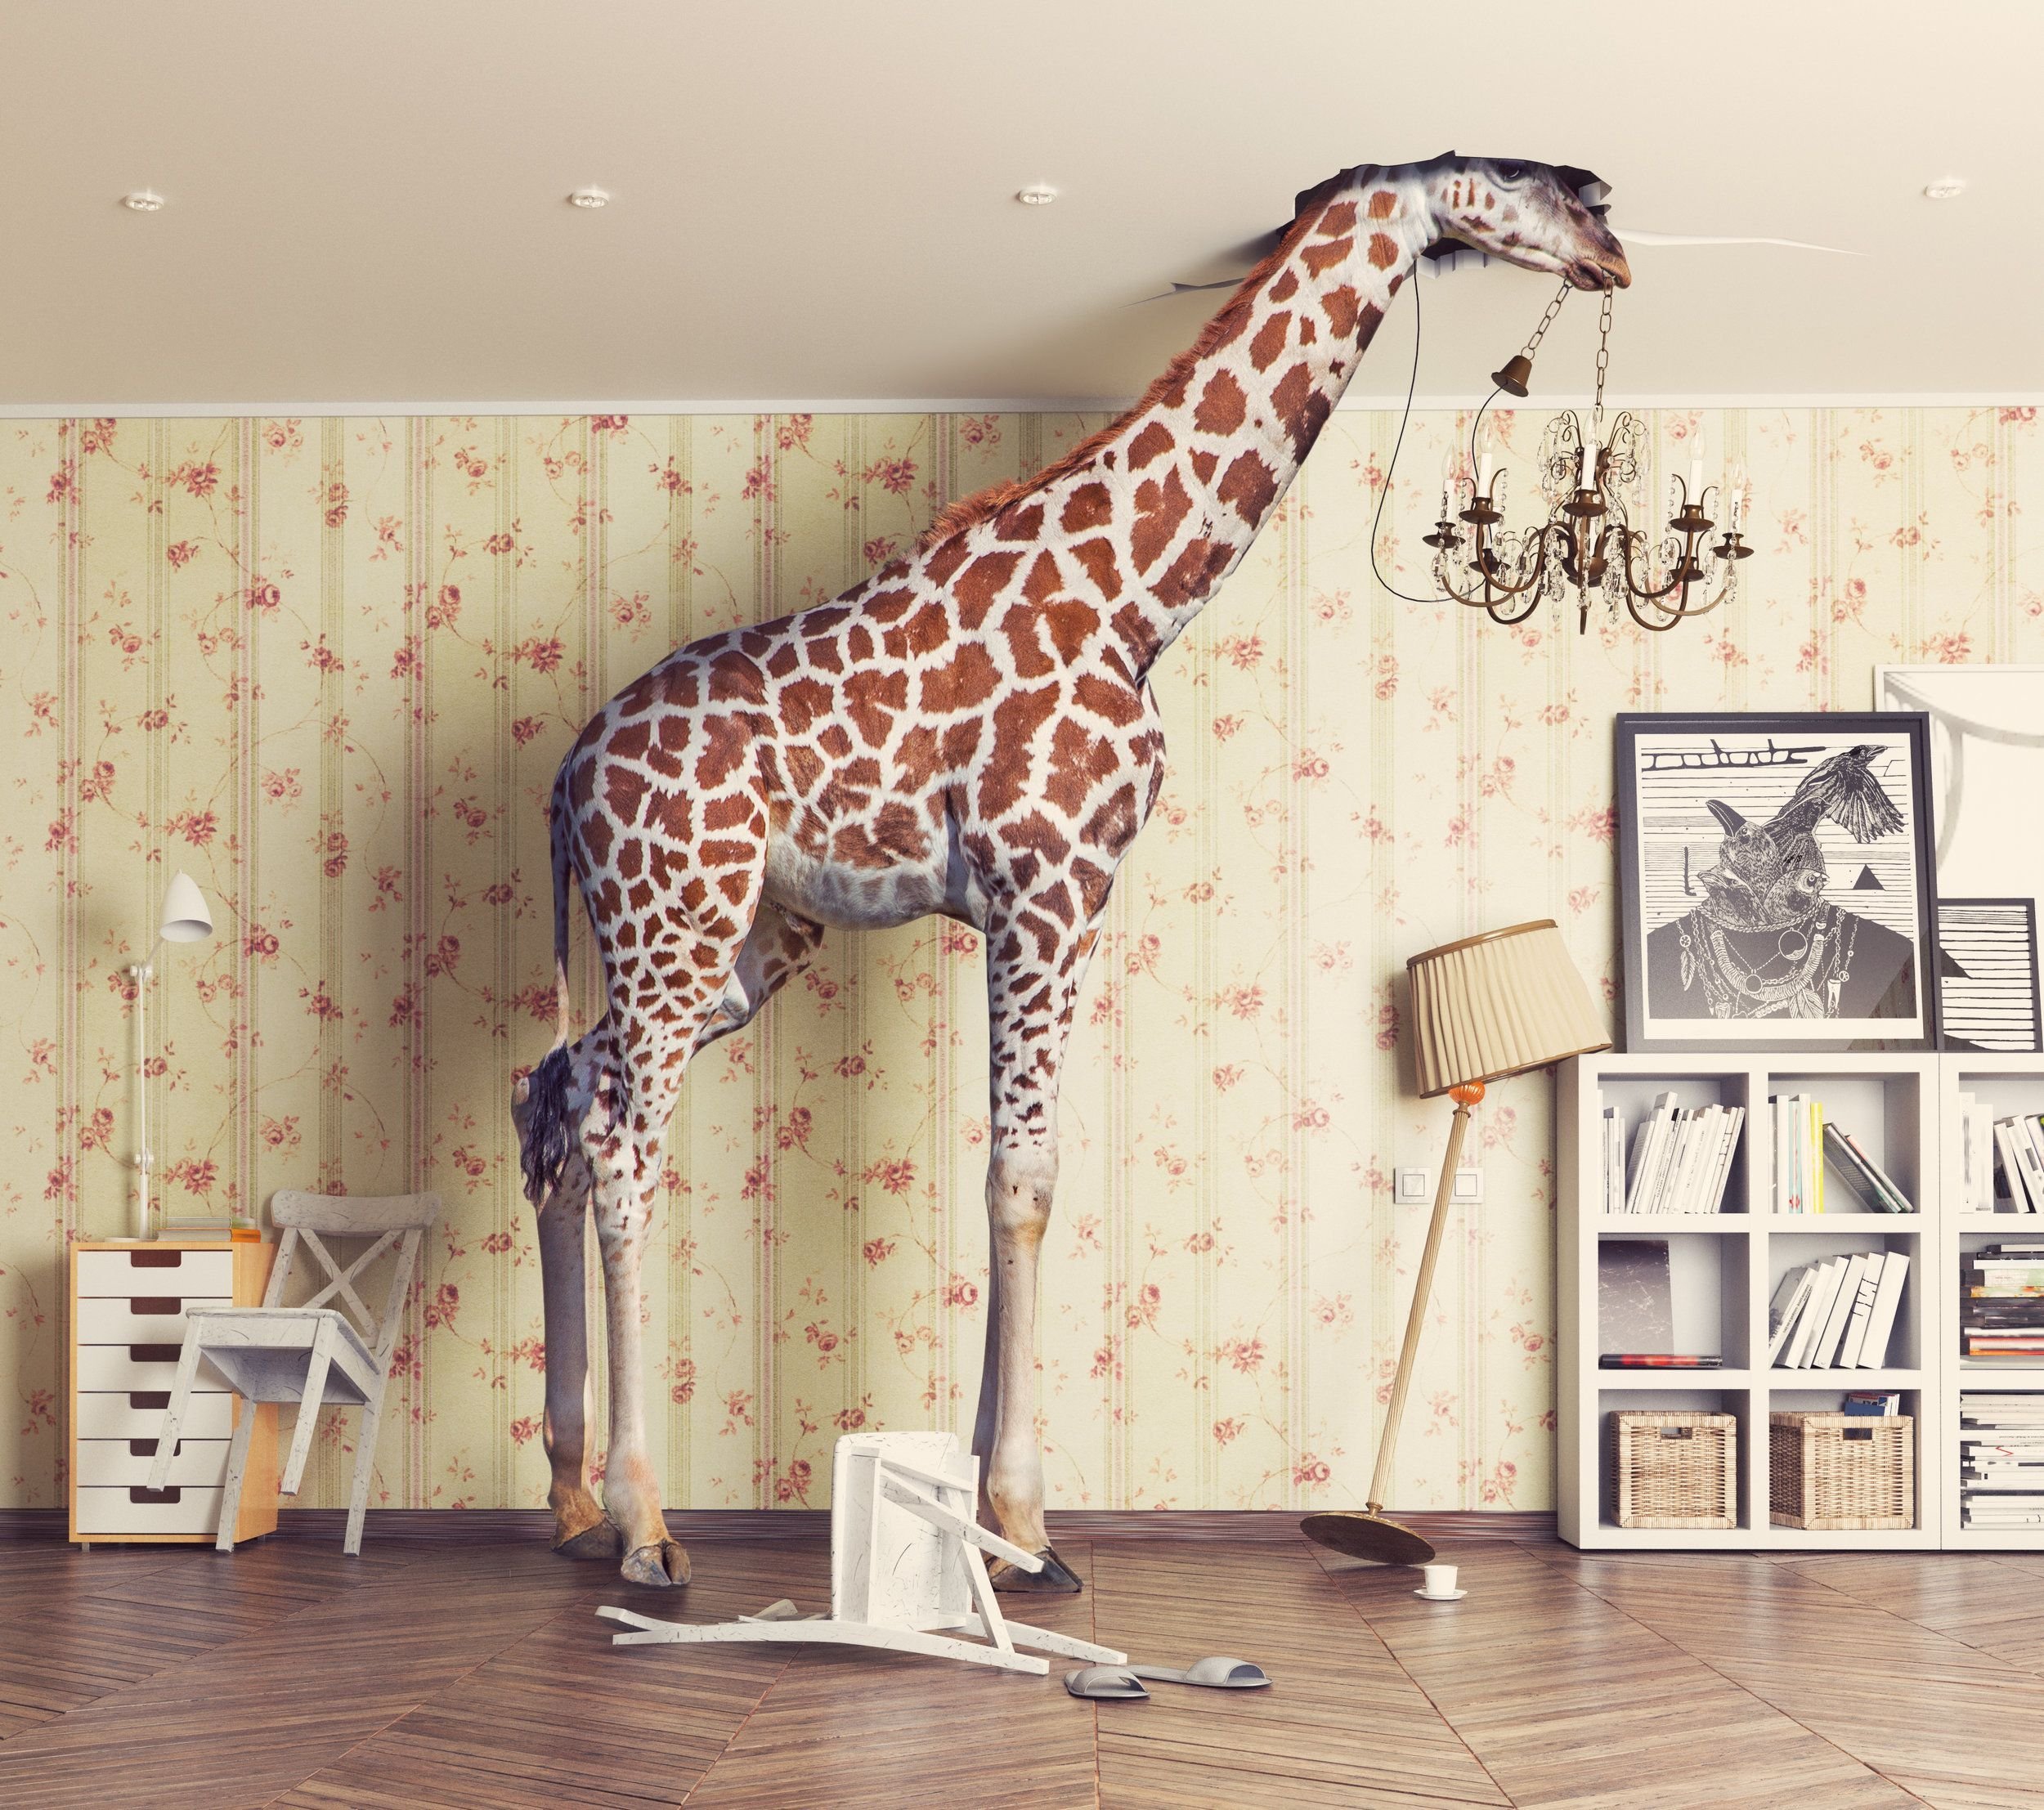 Жираф в интерьере квартиры